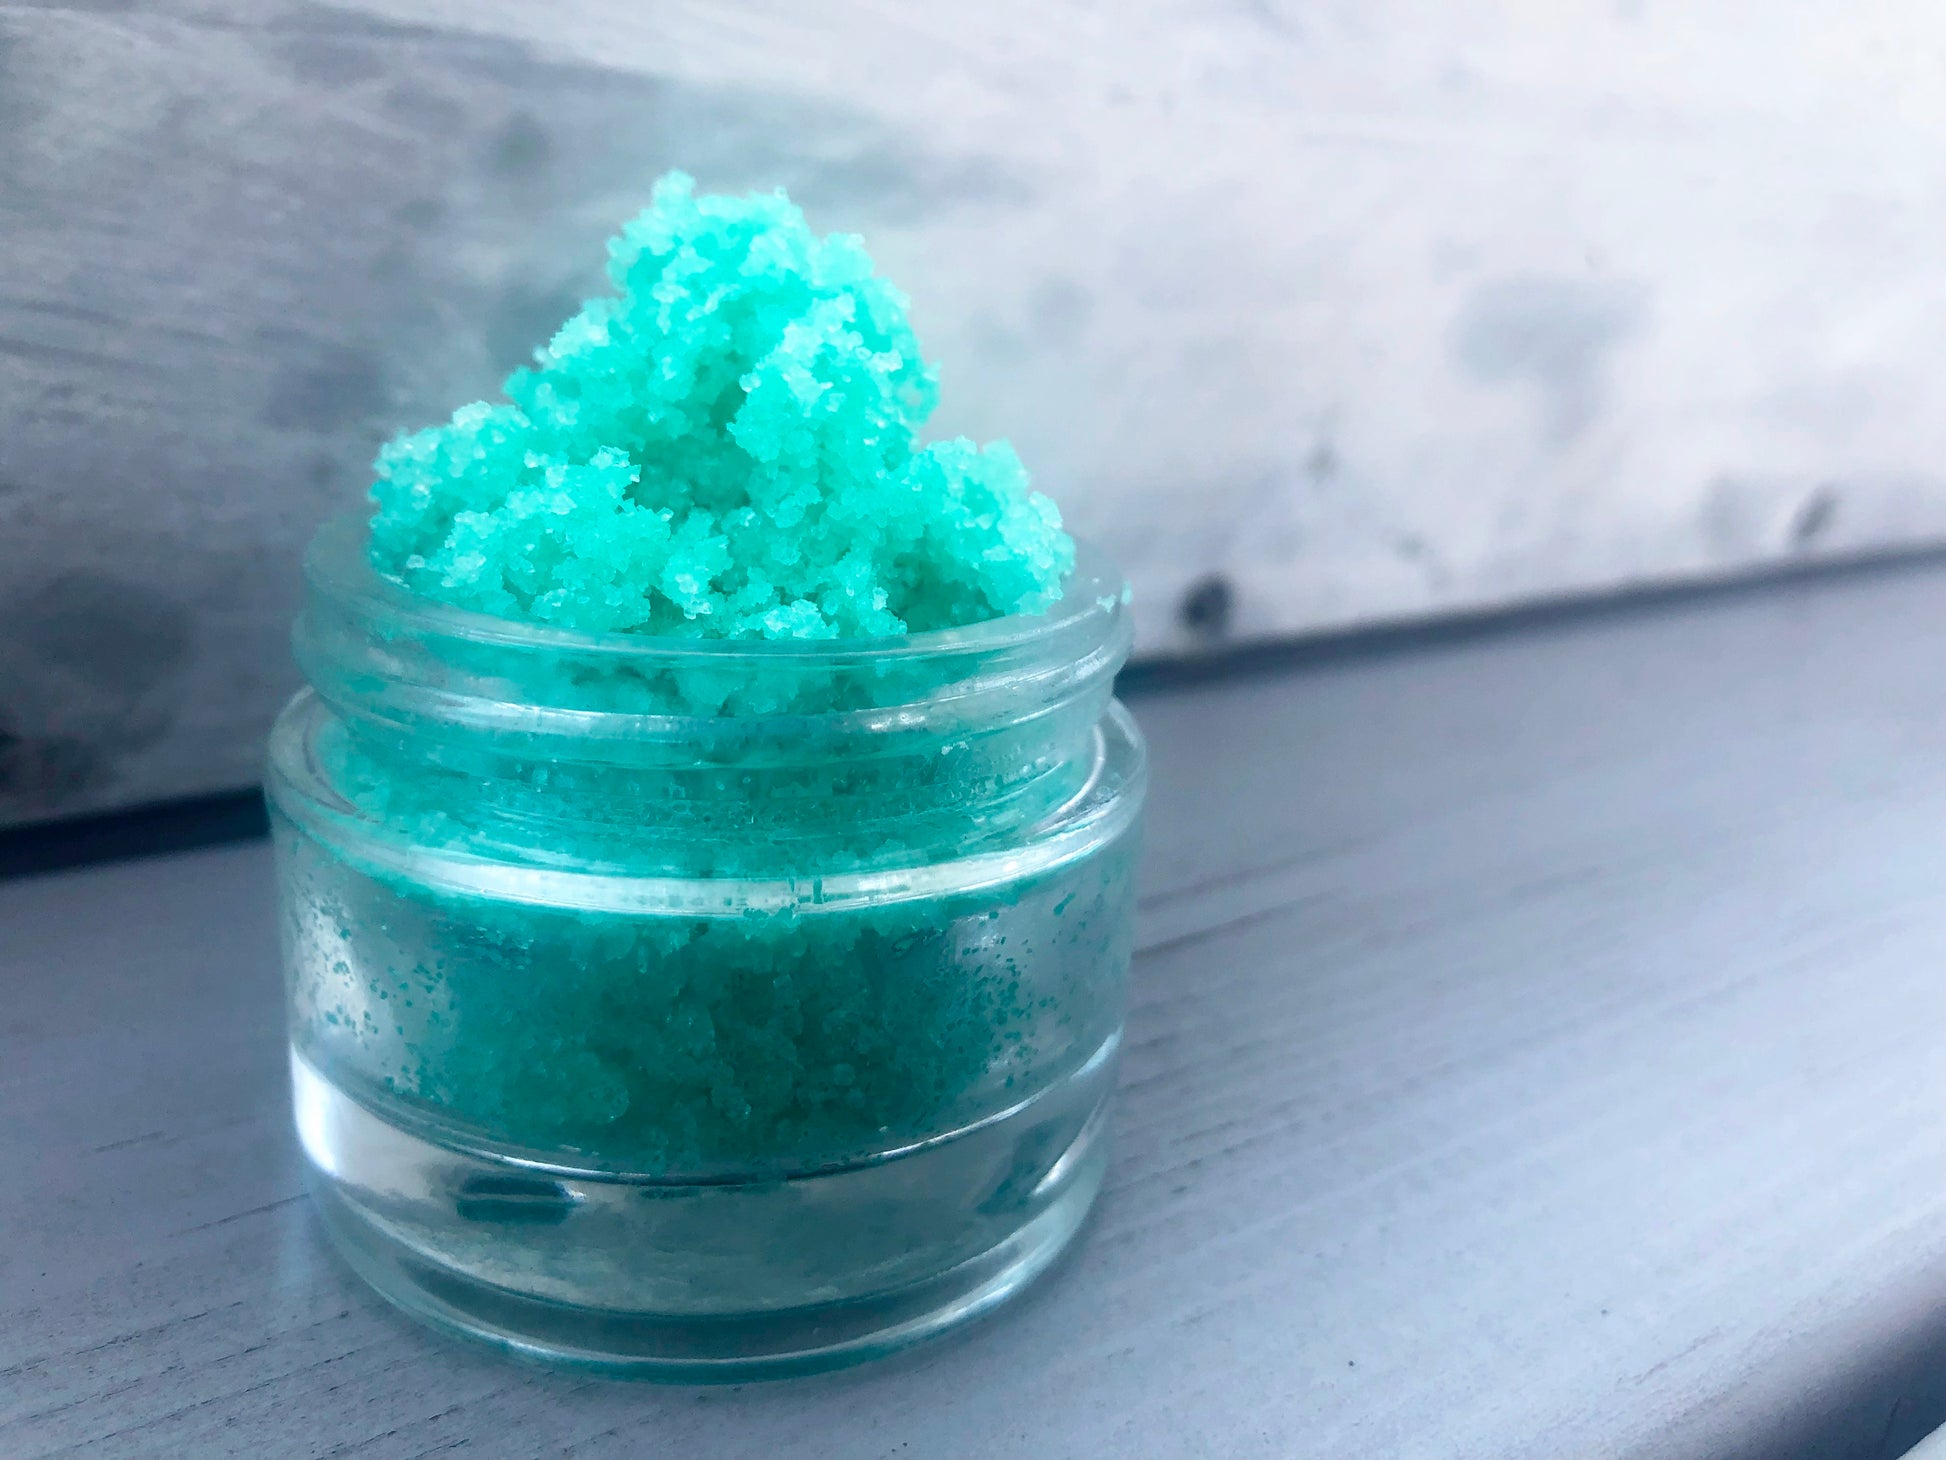 Green watermelon sugar lip scrub used for exfoliating in a glass jar